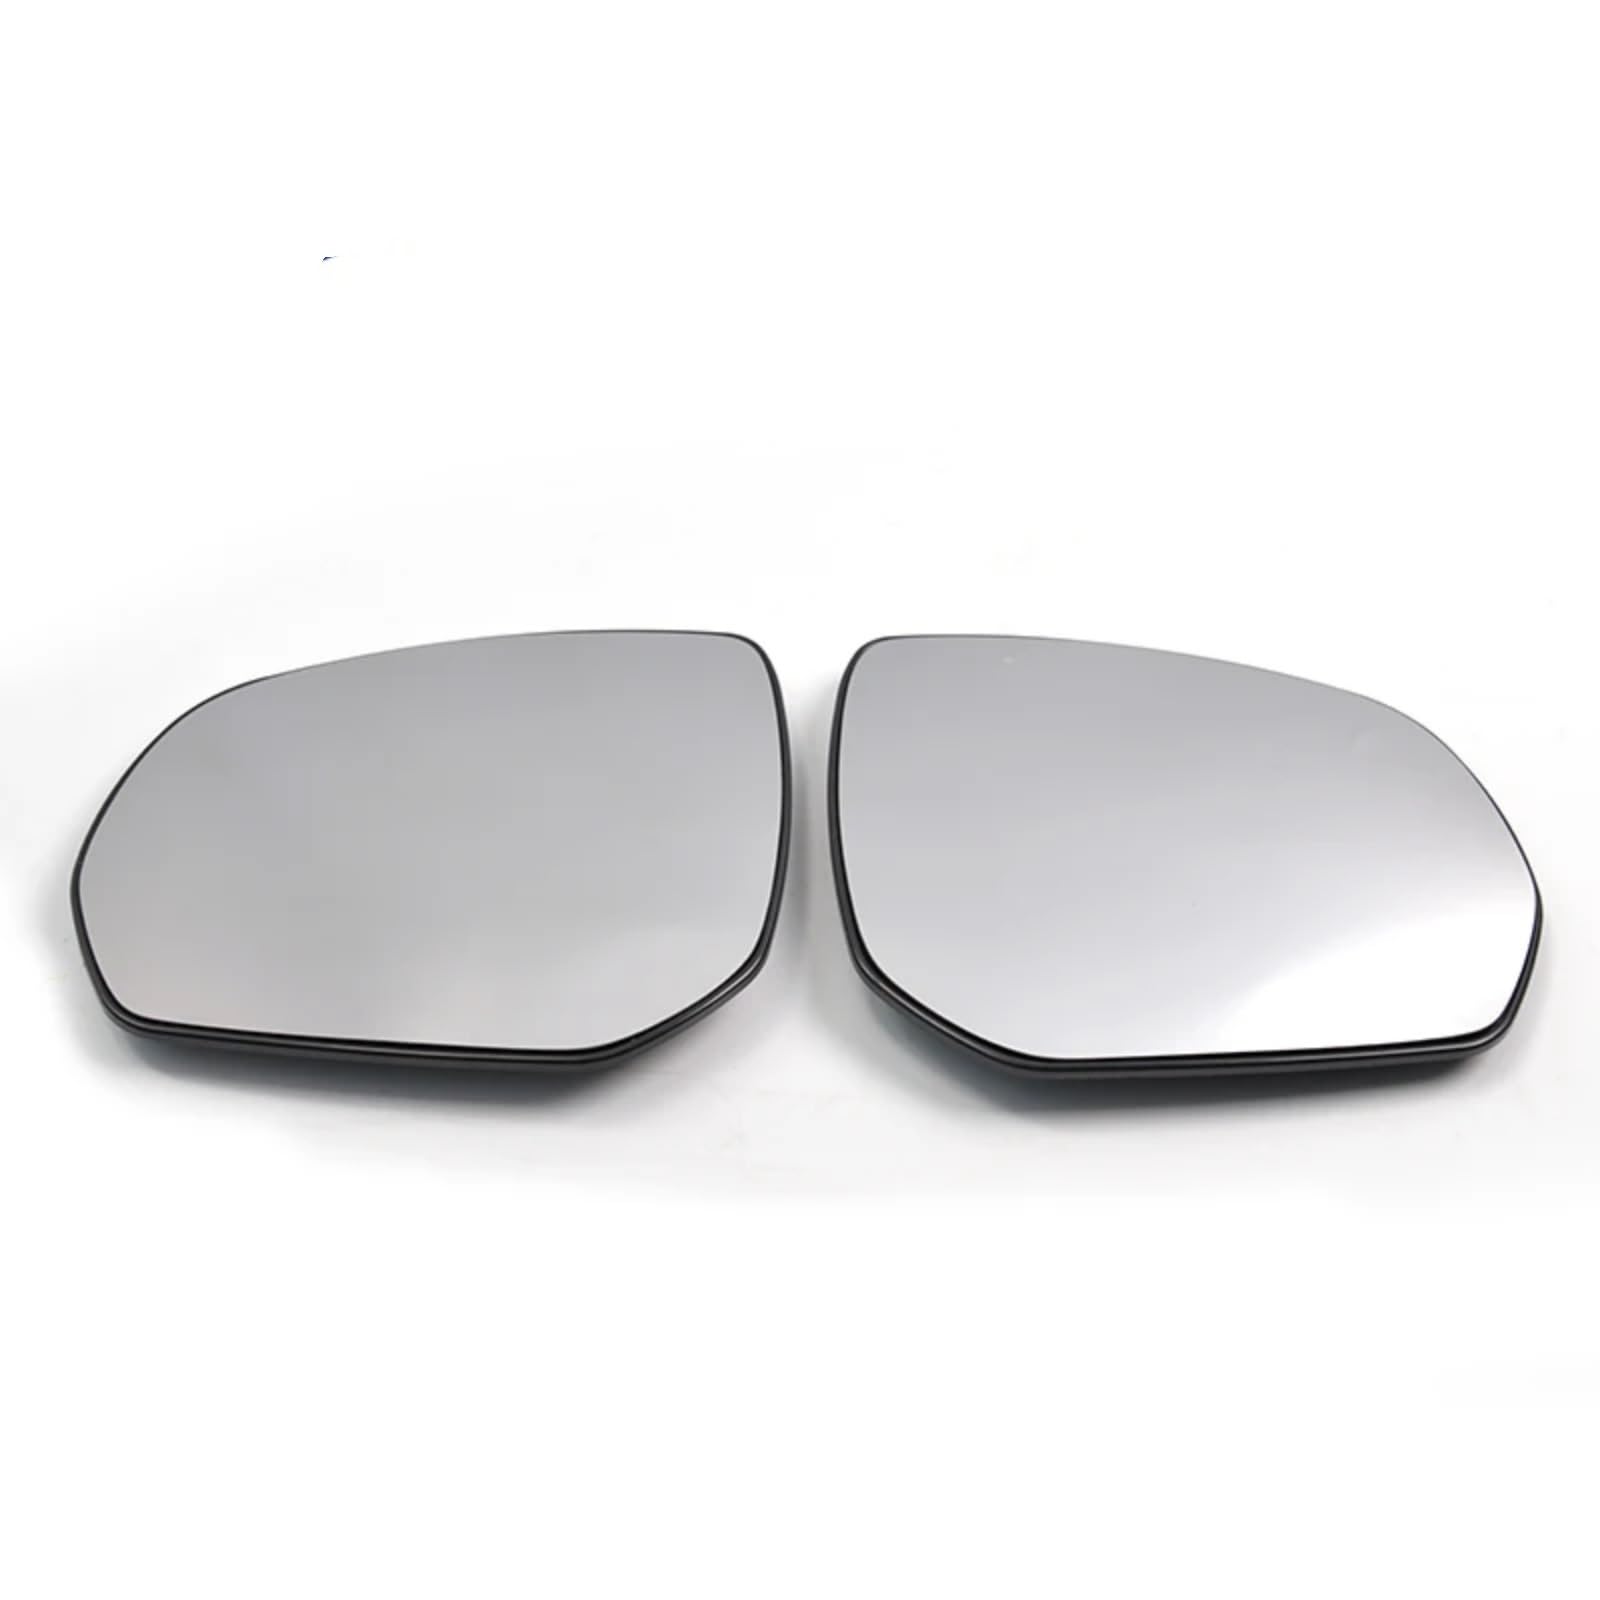 Seitenspiegelglas Kompatibel Mit Citroen Für C3 Für Picasso 2009 2010 2011 2012 2013 2014 2015 2016 2017 2018 2019 Autoflügel Beheizte Spiegelglaslinse(Pair) von OTOZUM